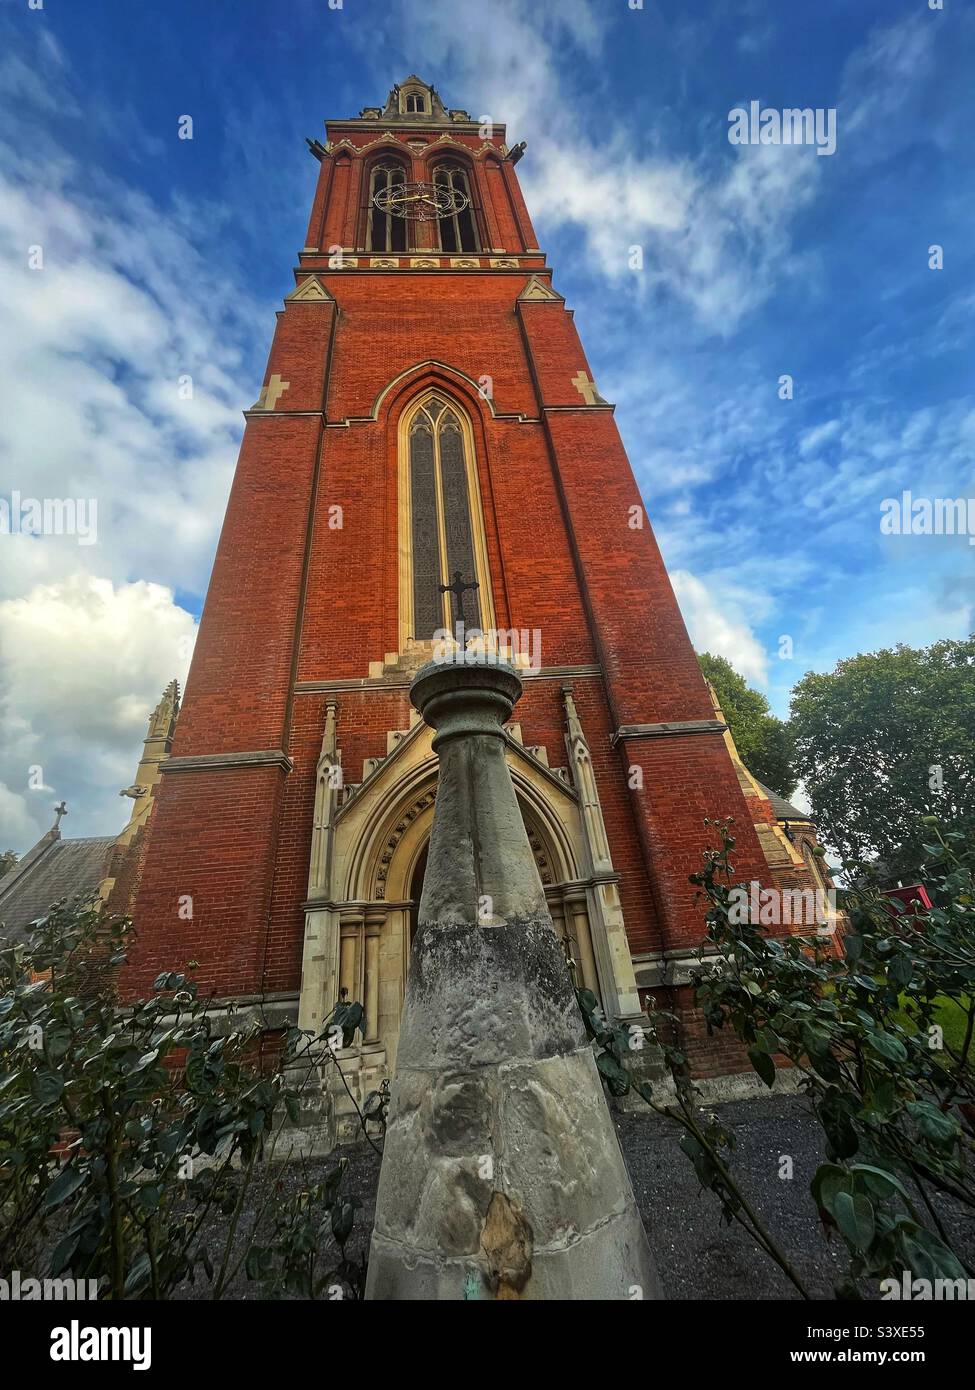 St. John the Divine, Kennington, Blick auf die Uhr und den Turm, der Turm und der Turm wurden 1994 umfassend restauriert. Viktorianische gotische Architektur Grade I aufgeführt Stockfoto